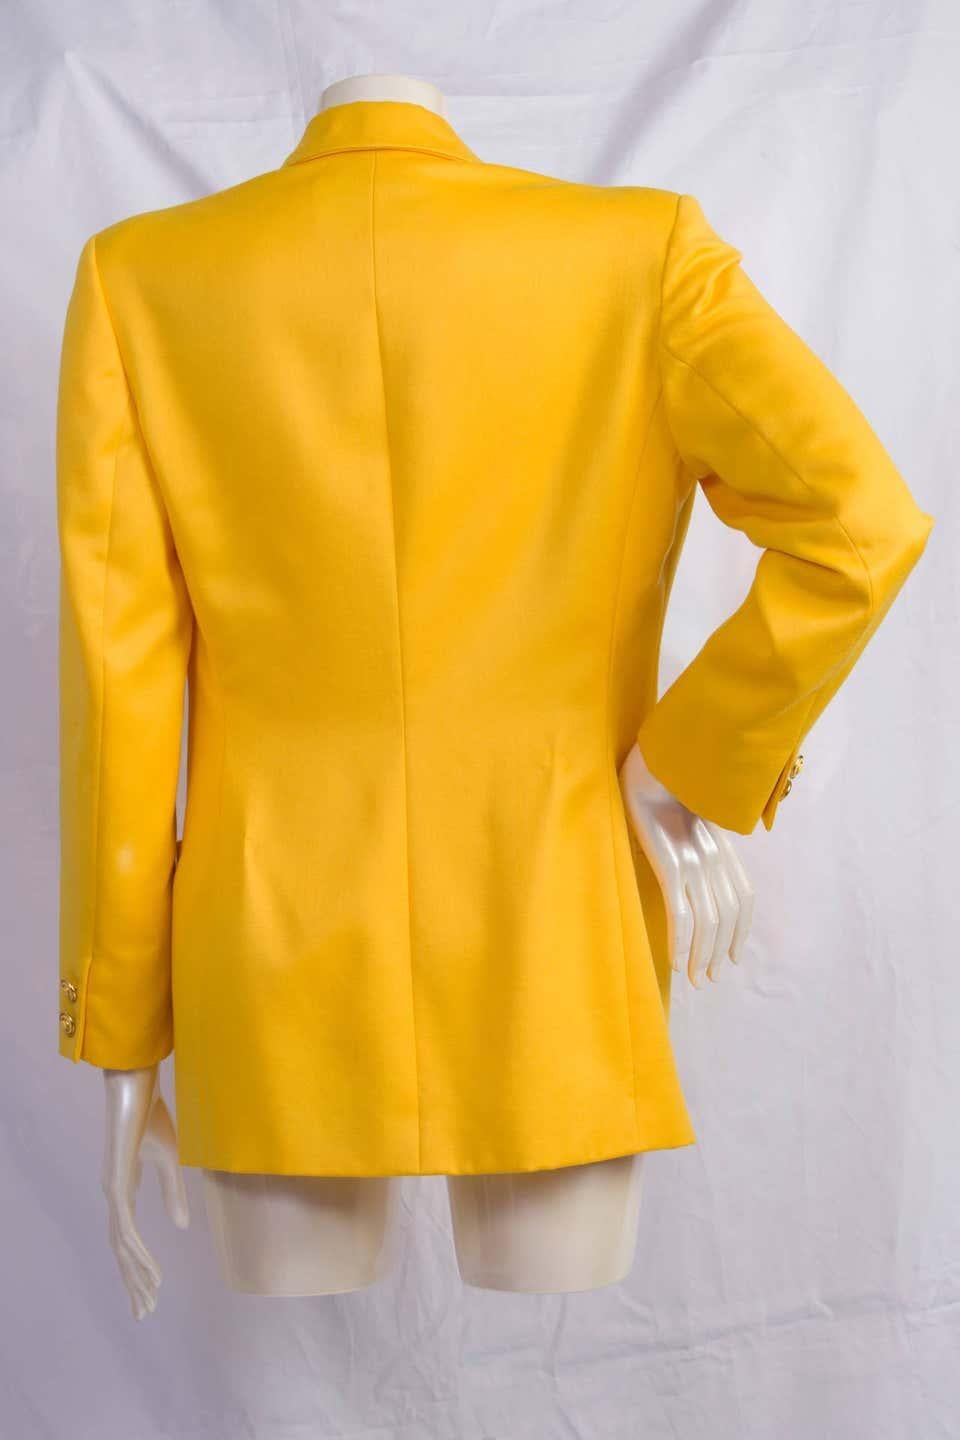 versace jacket yellow